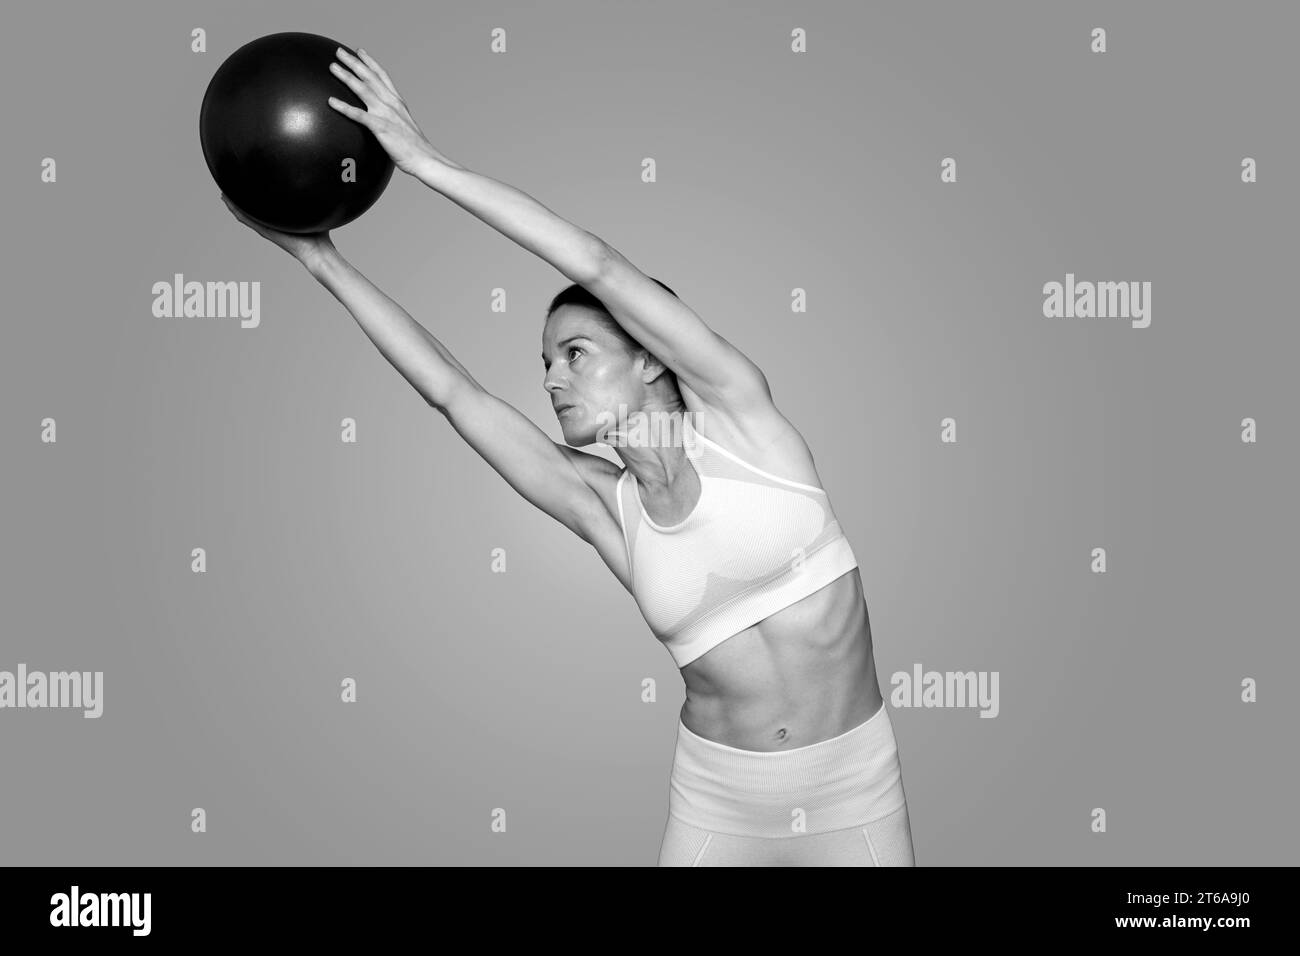 Frau, die einen Pilateball hält und sich dehnt, schwarz-weiß. Stockfoto